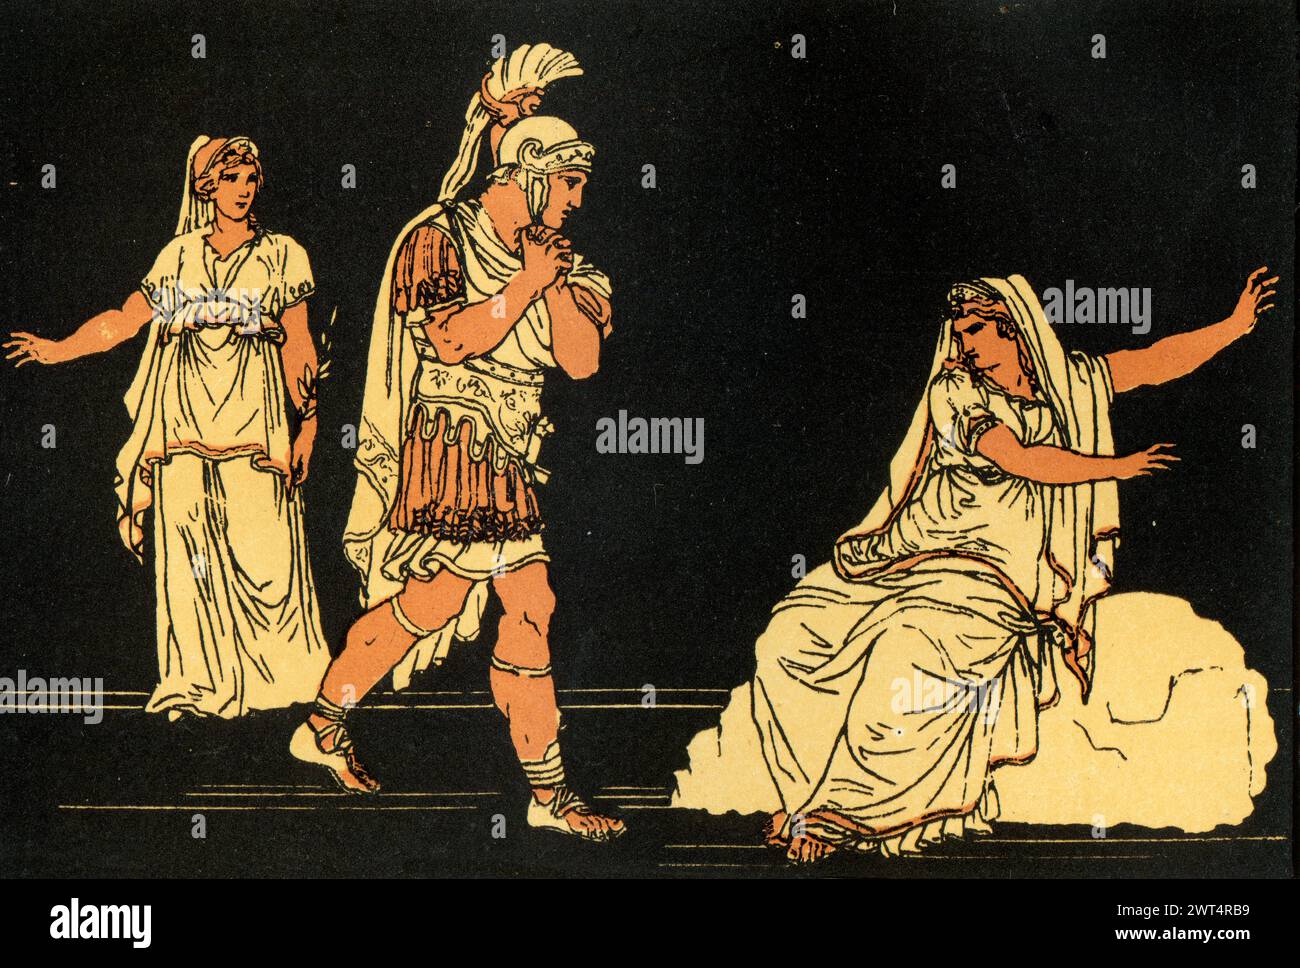 Illustrazione d'epoca mitologia romana, Enea e l'ombra di Dido, Eneide un poema epico latino che racconta la leggendaria storia di Enea, un troiano che fl Foto Stock